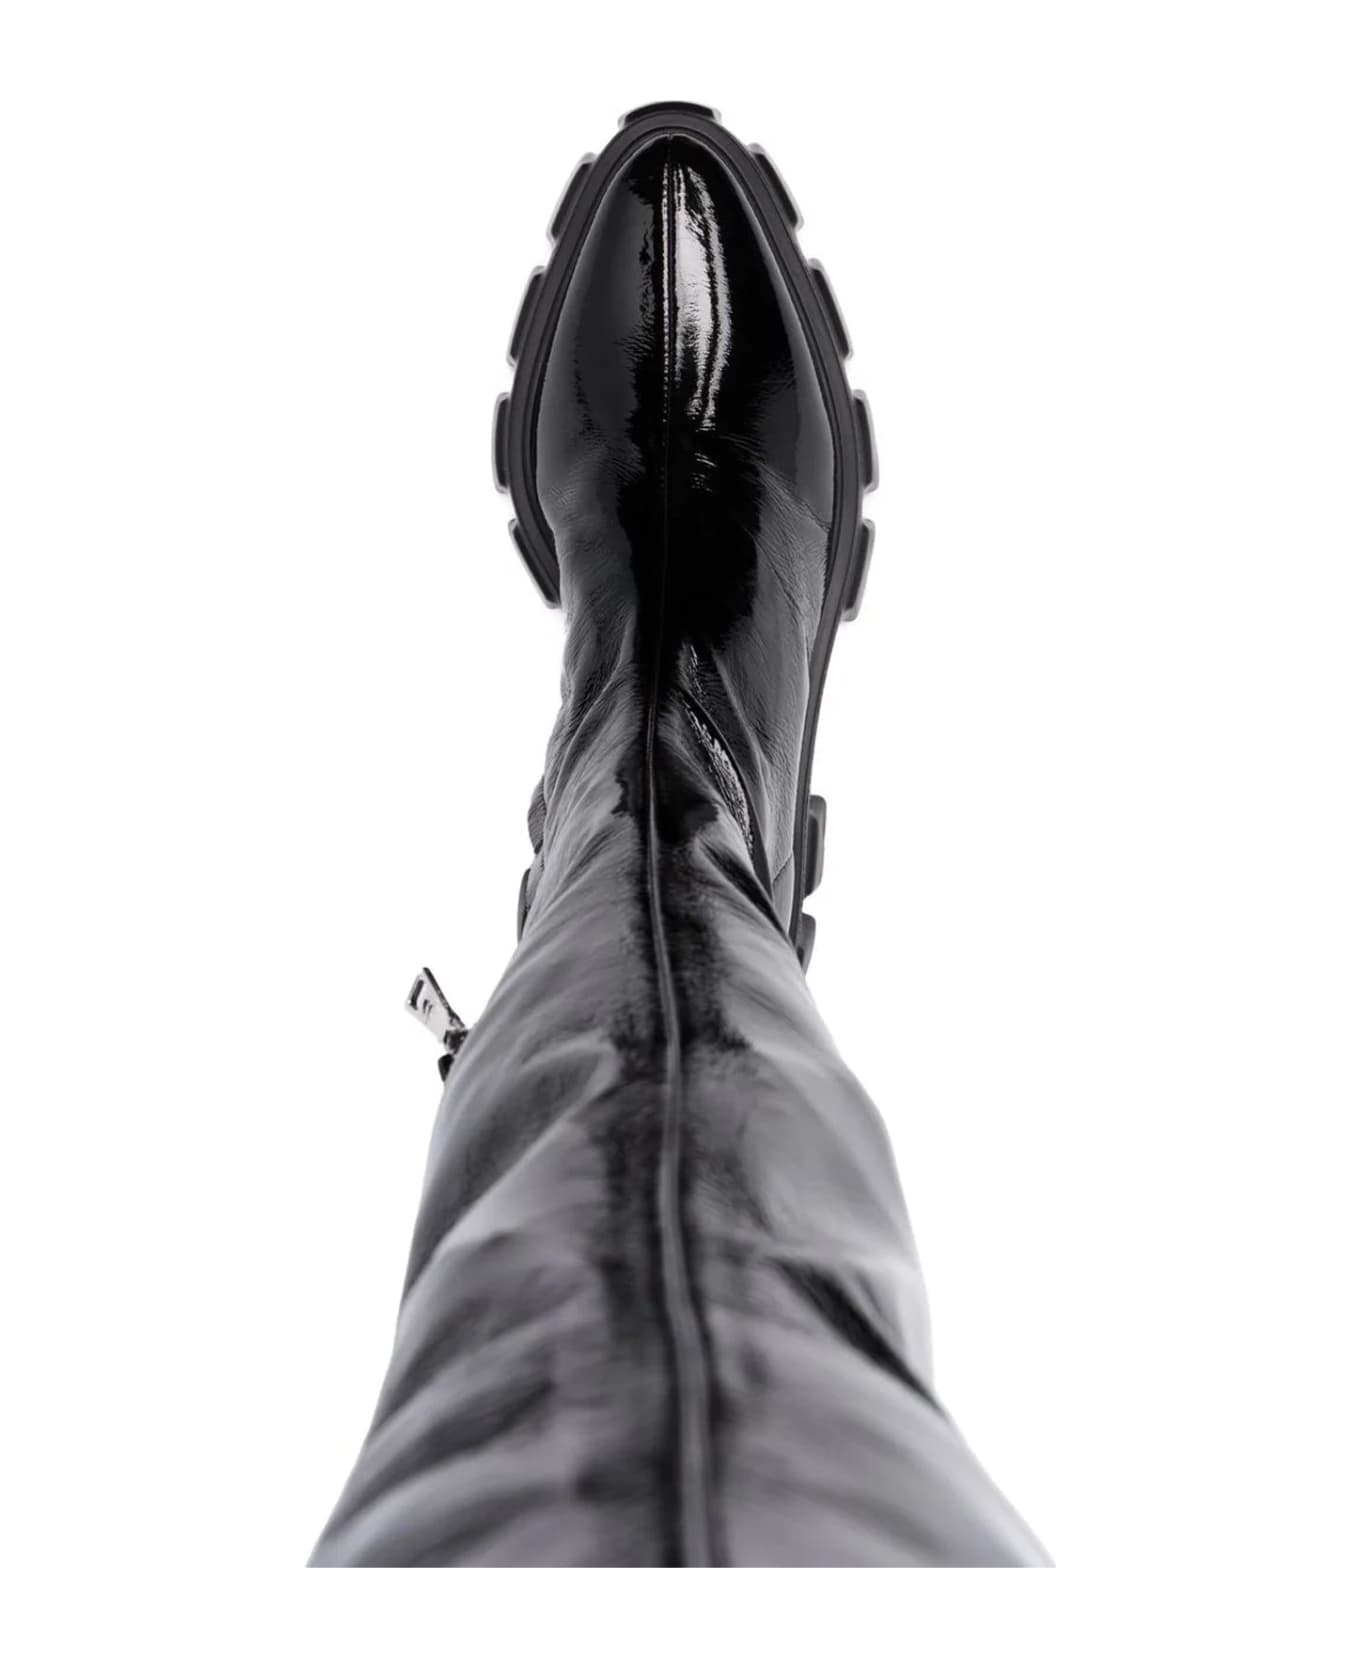 Prada Thigh-high Boots - Black ブーツ